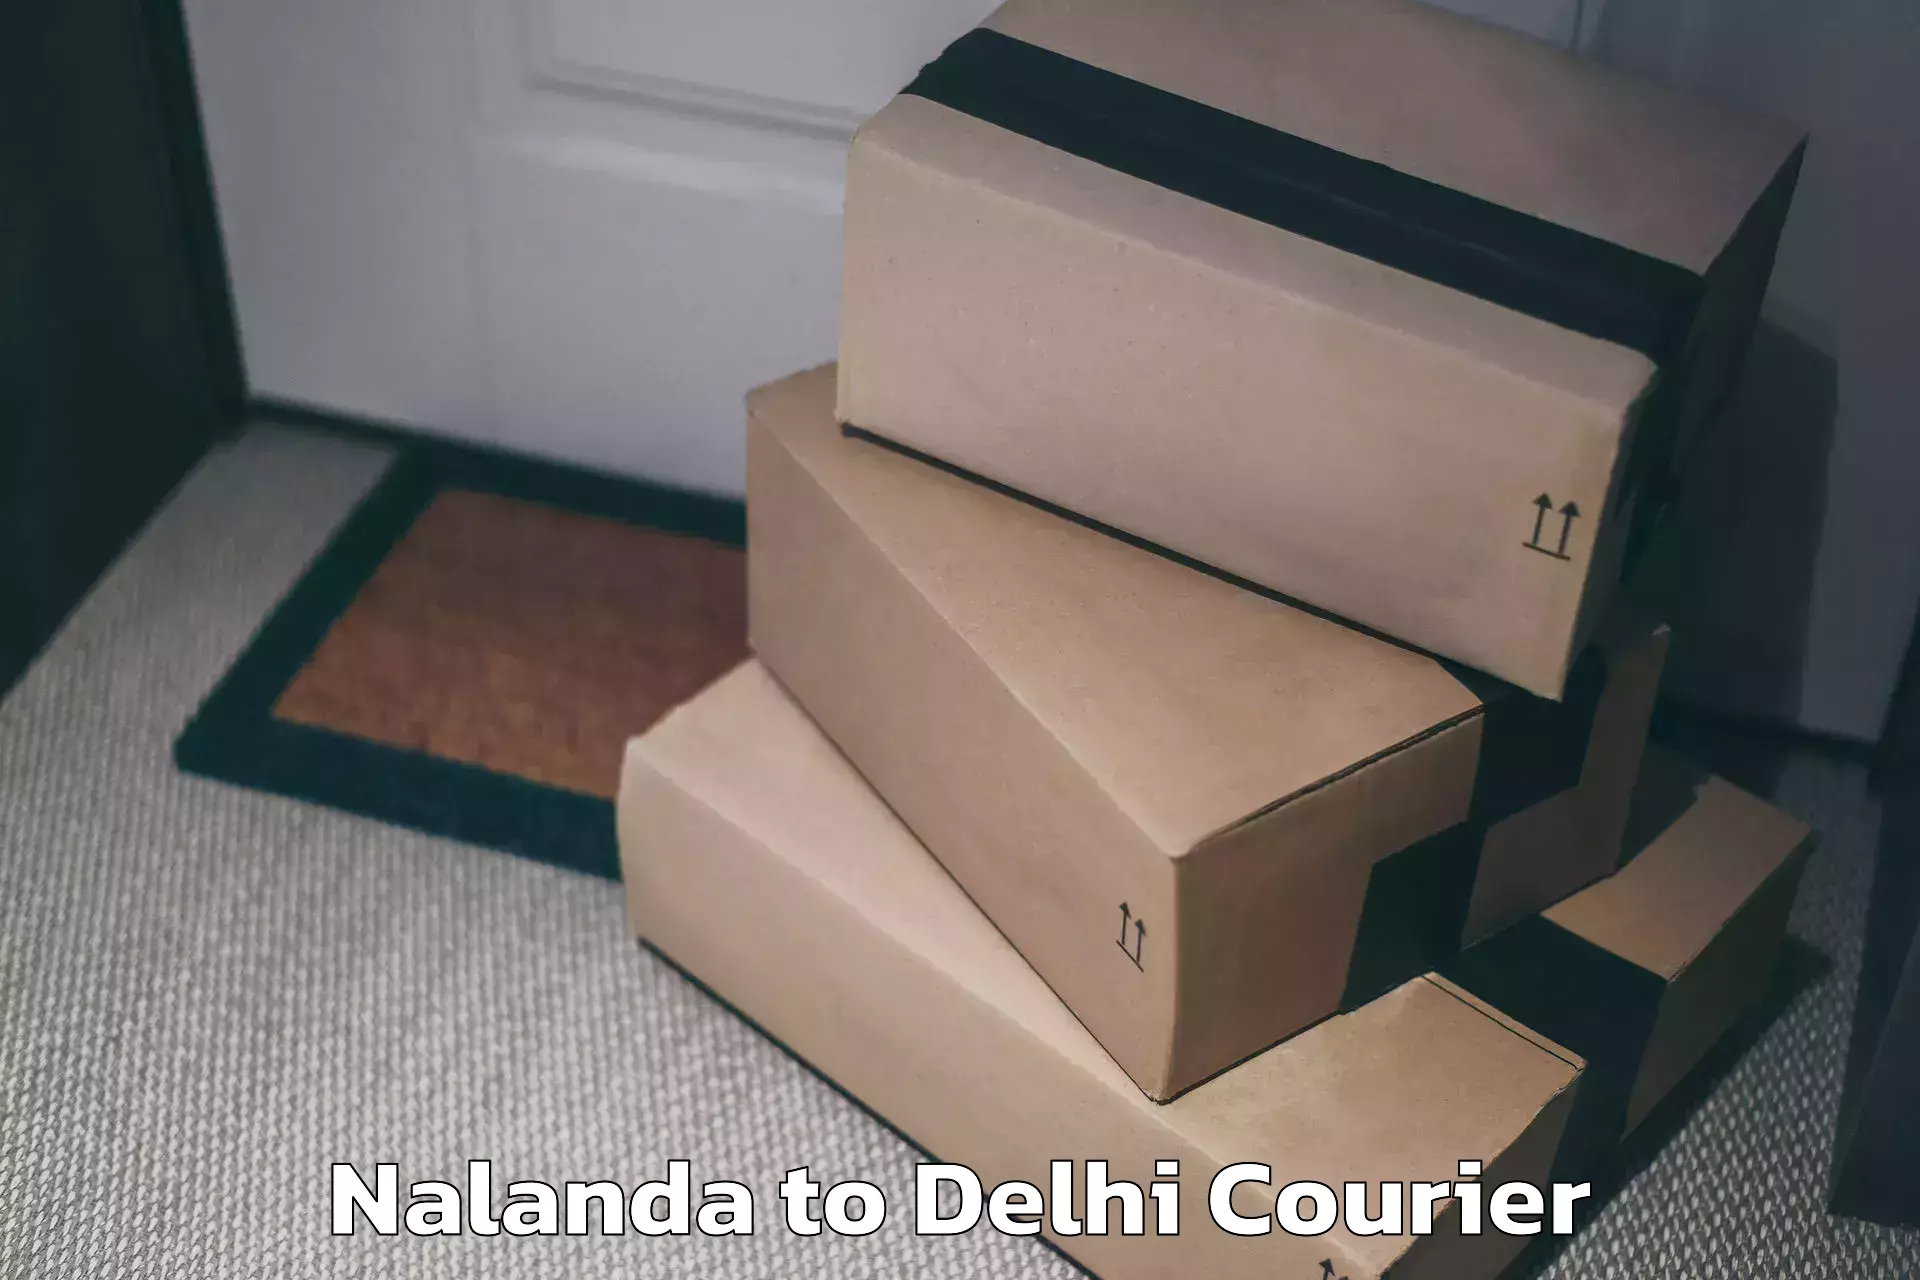 Luggage shipment tracking in Nalanda to Delhi